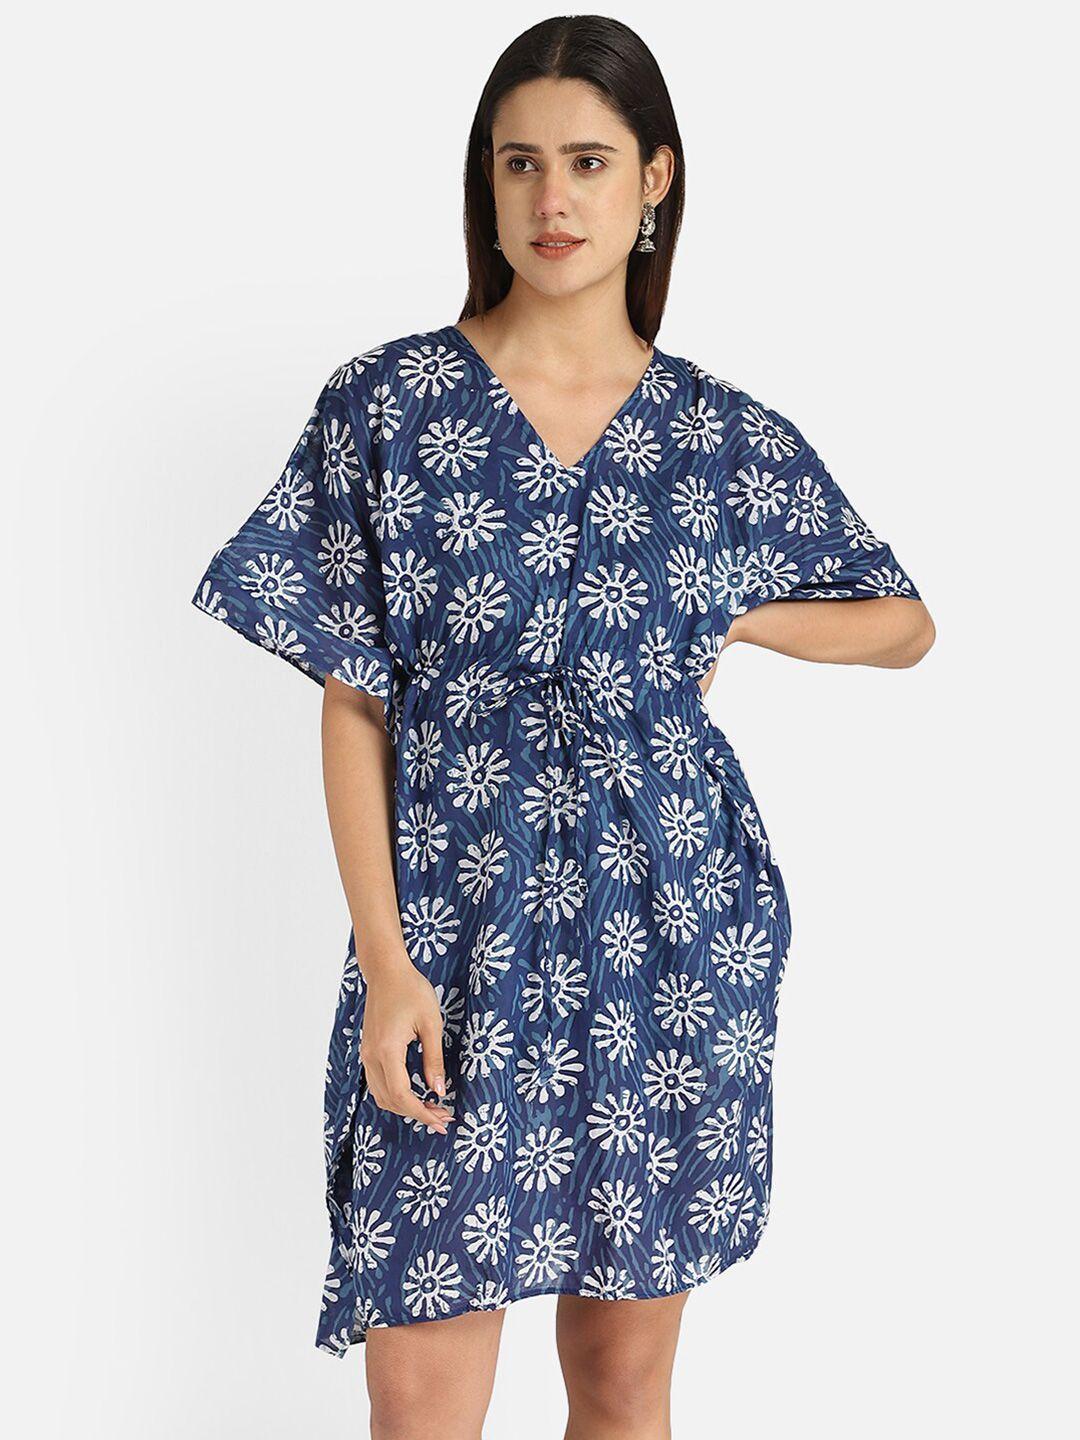 aditi wasan blue & white floral cotton kaftan dress